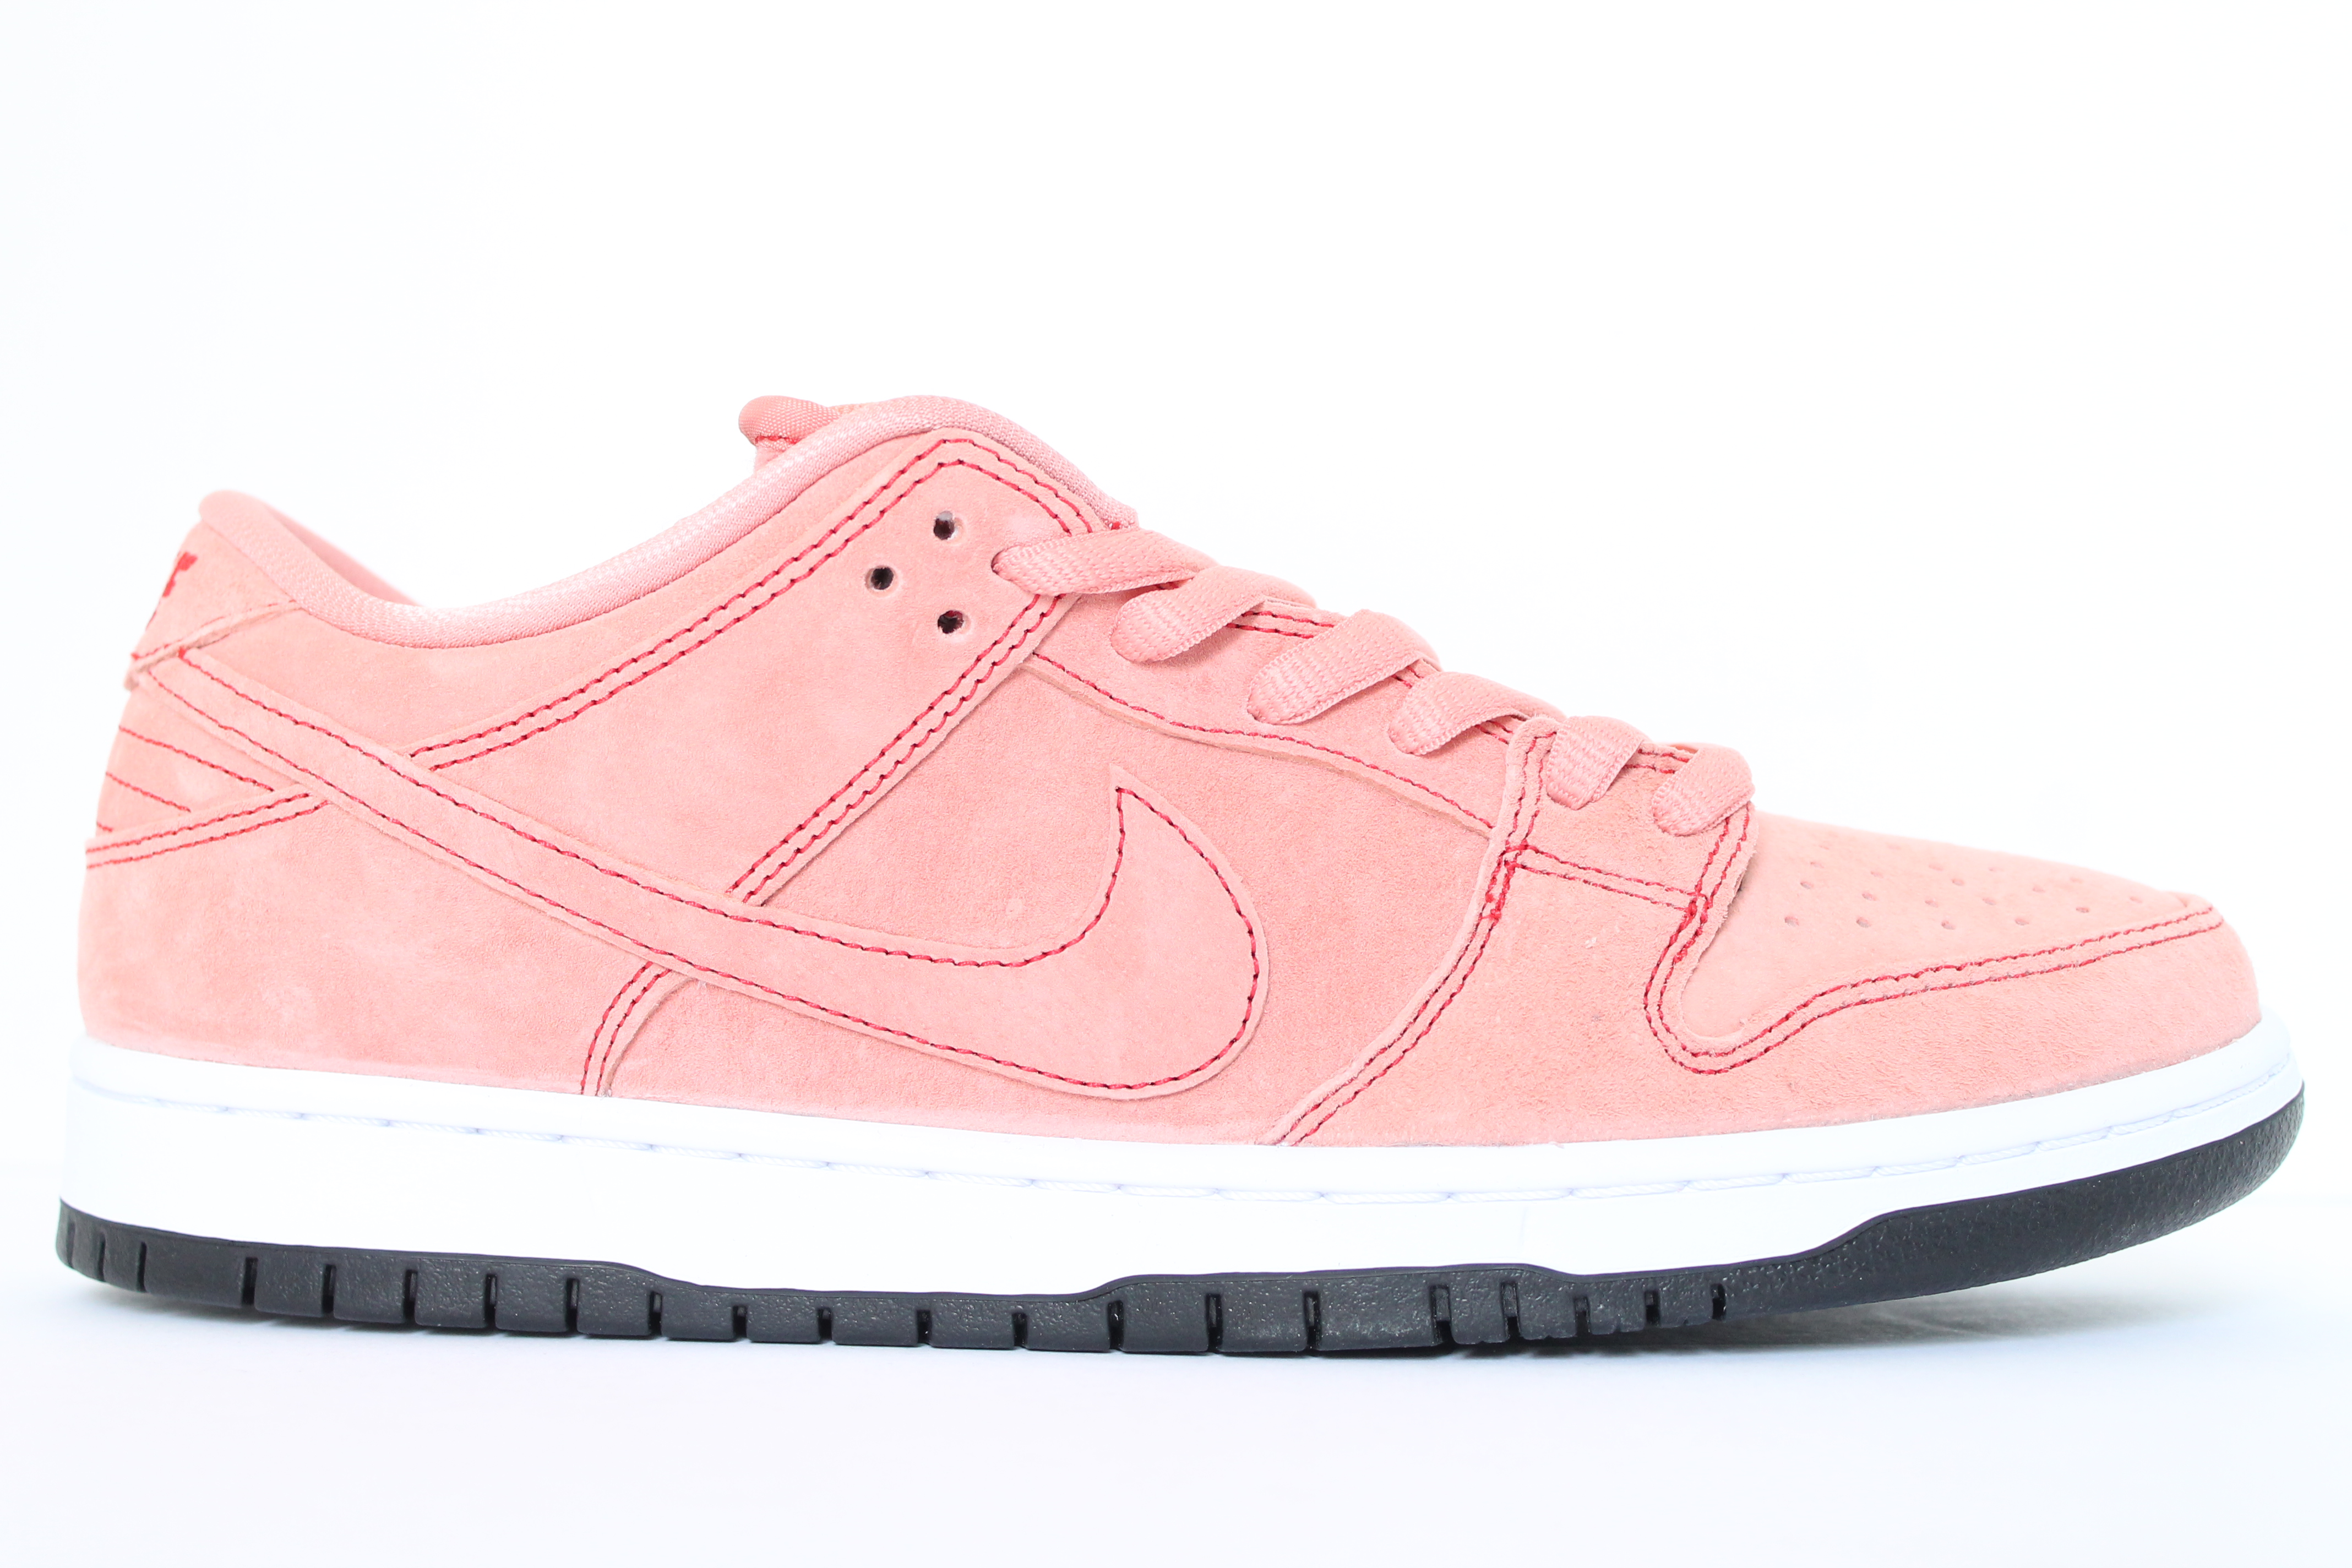 Nike SB Dunk Low Pro PRM 'Pink Pig'